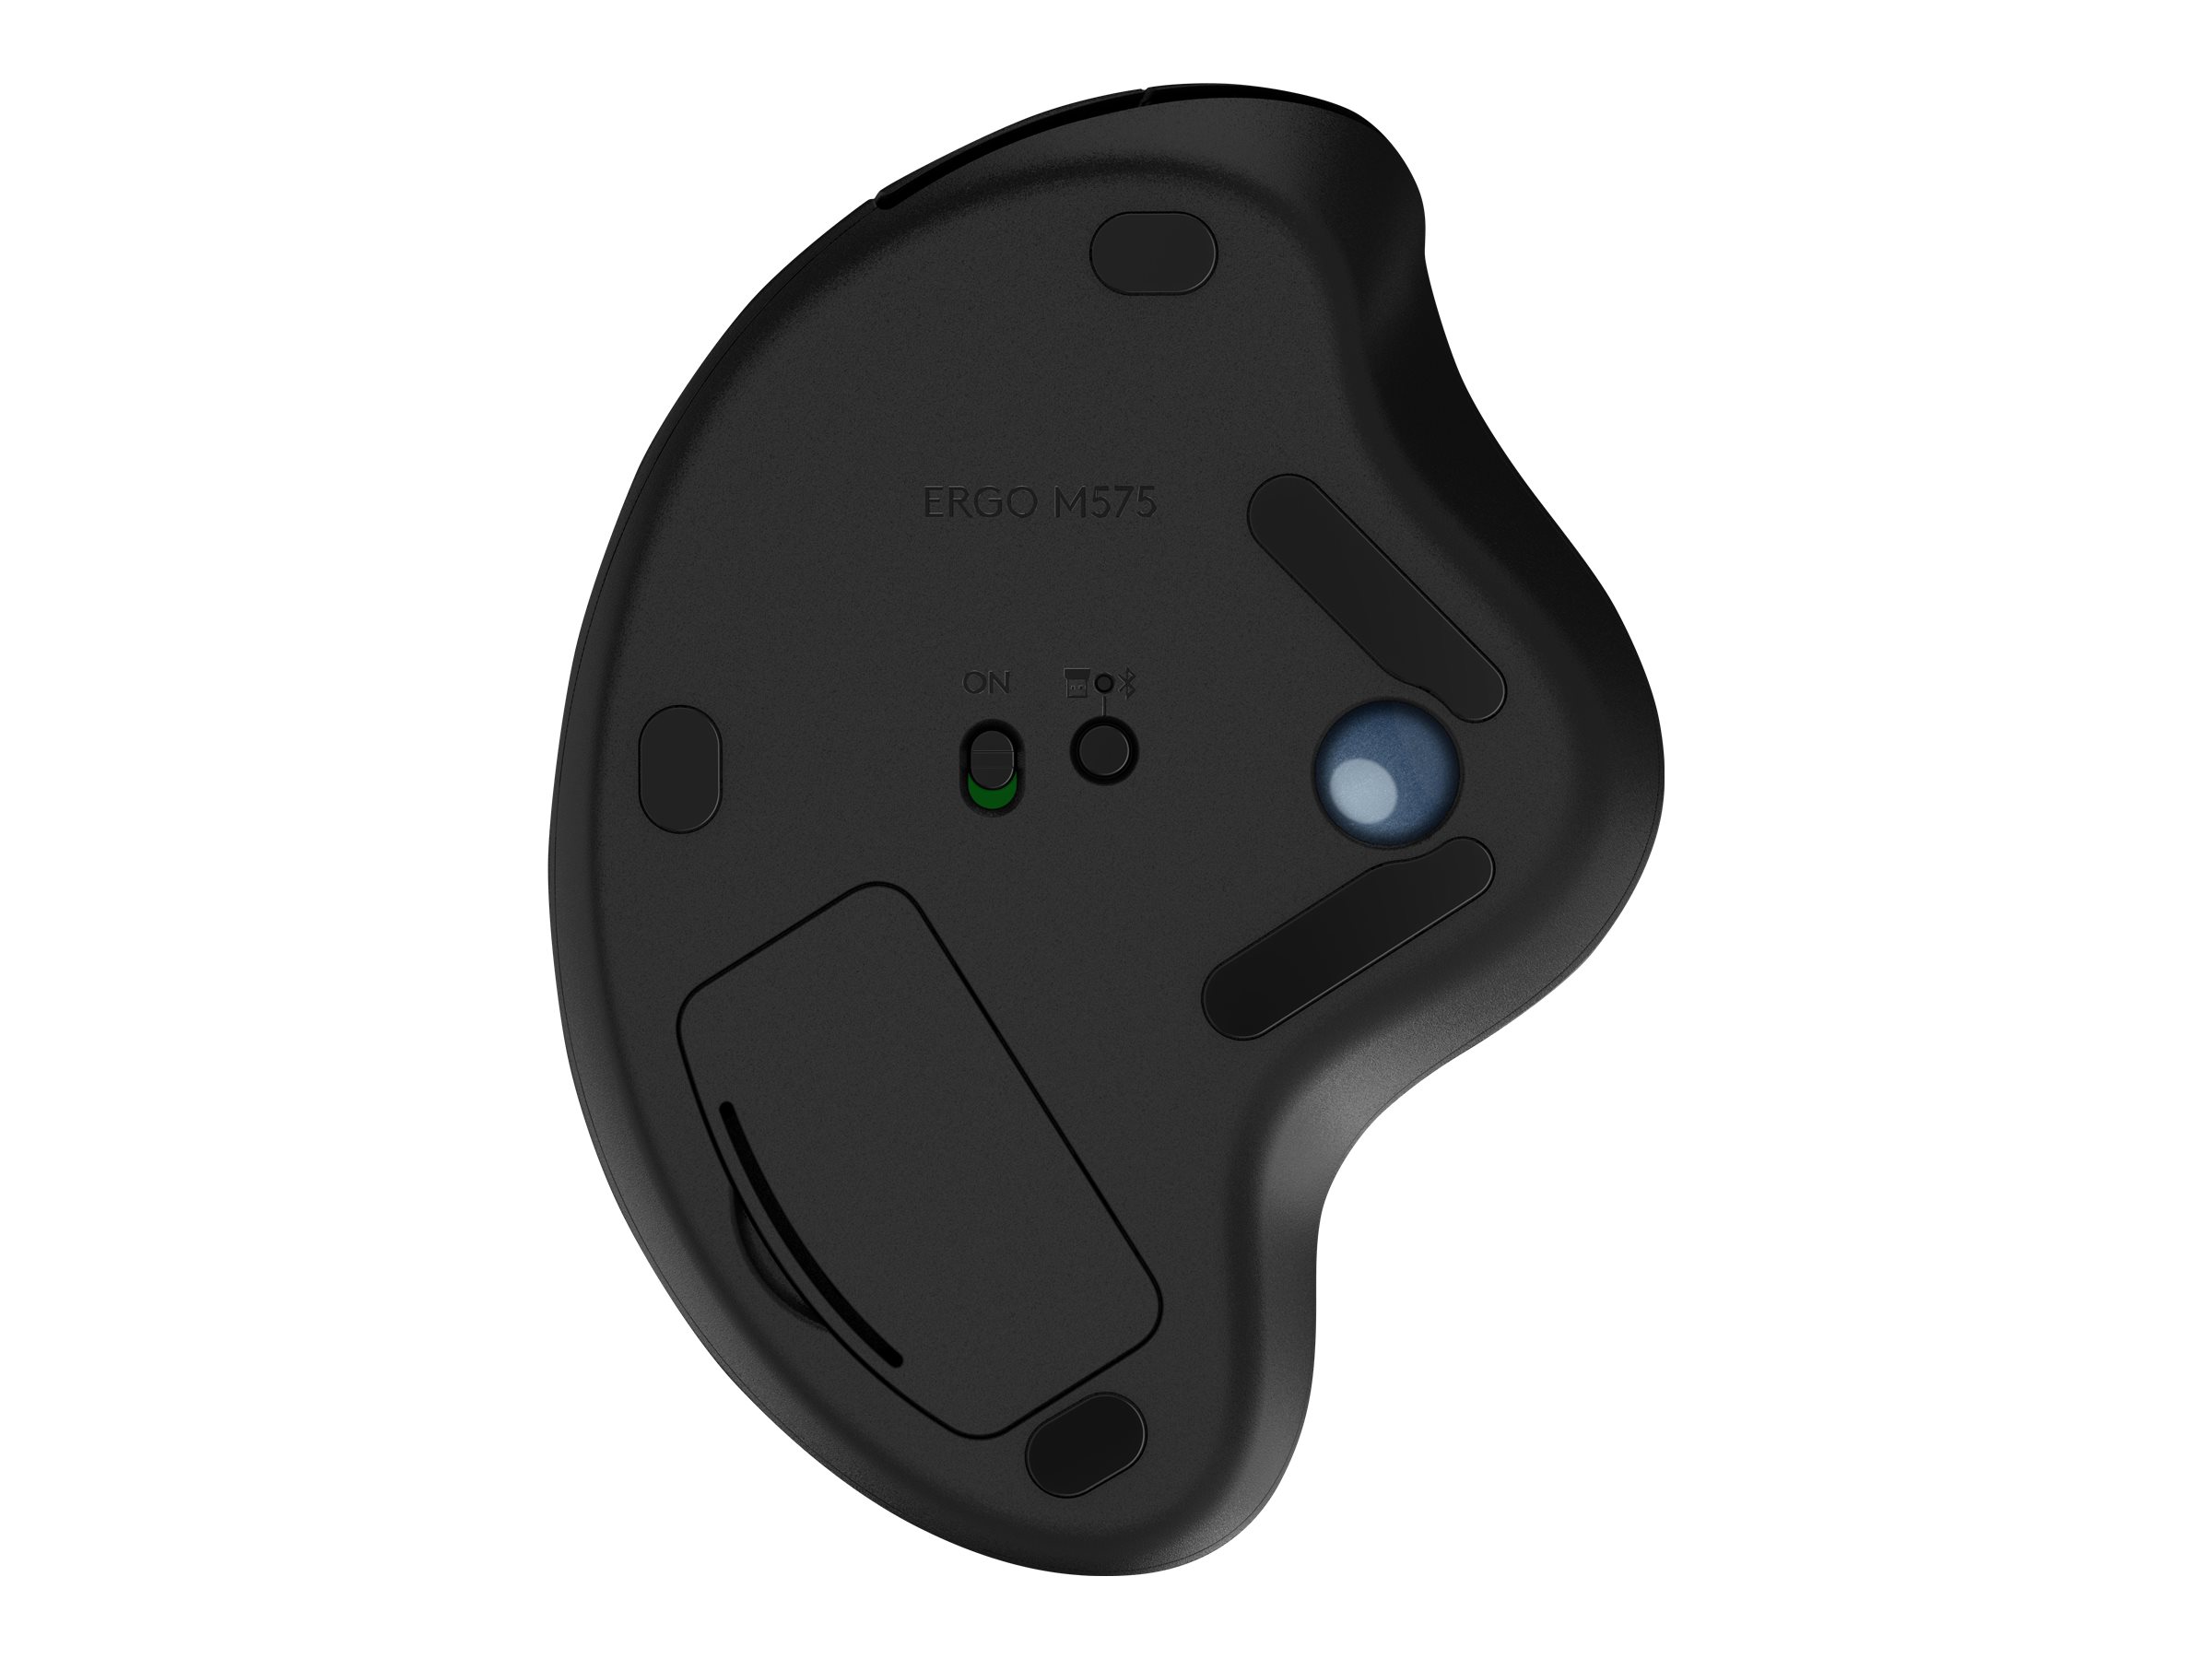 Logitech ERGO M575 - Trackball - optisch - 5 Tasten - kabellos - 2.4 GHz, Bluetooth 5.0 LE - kabelloser Empfänger (USB)